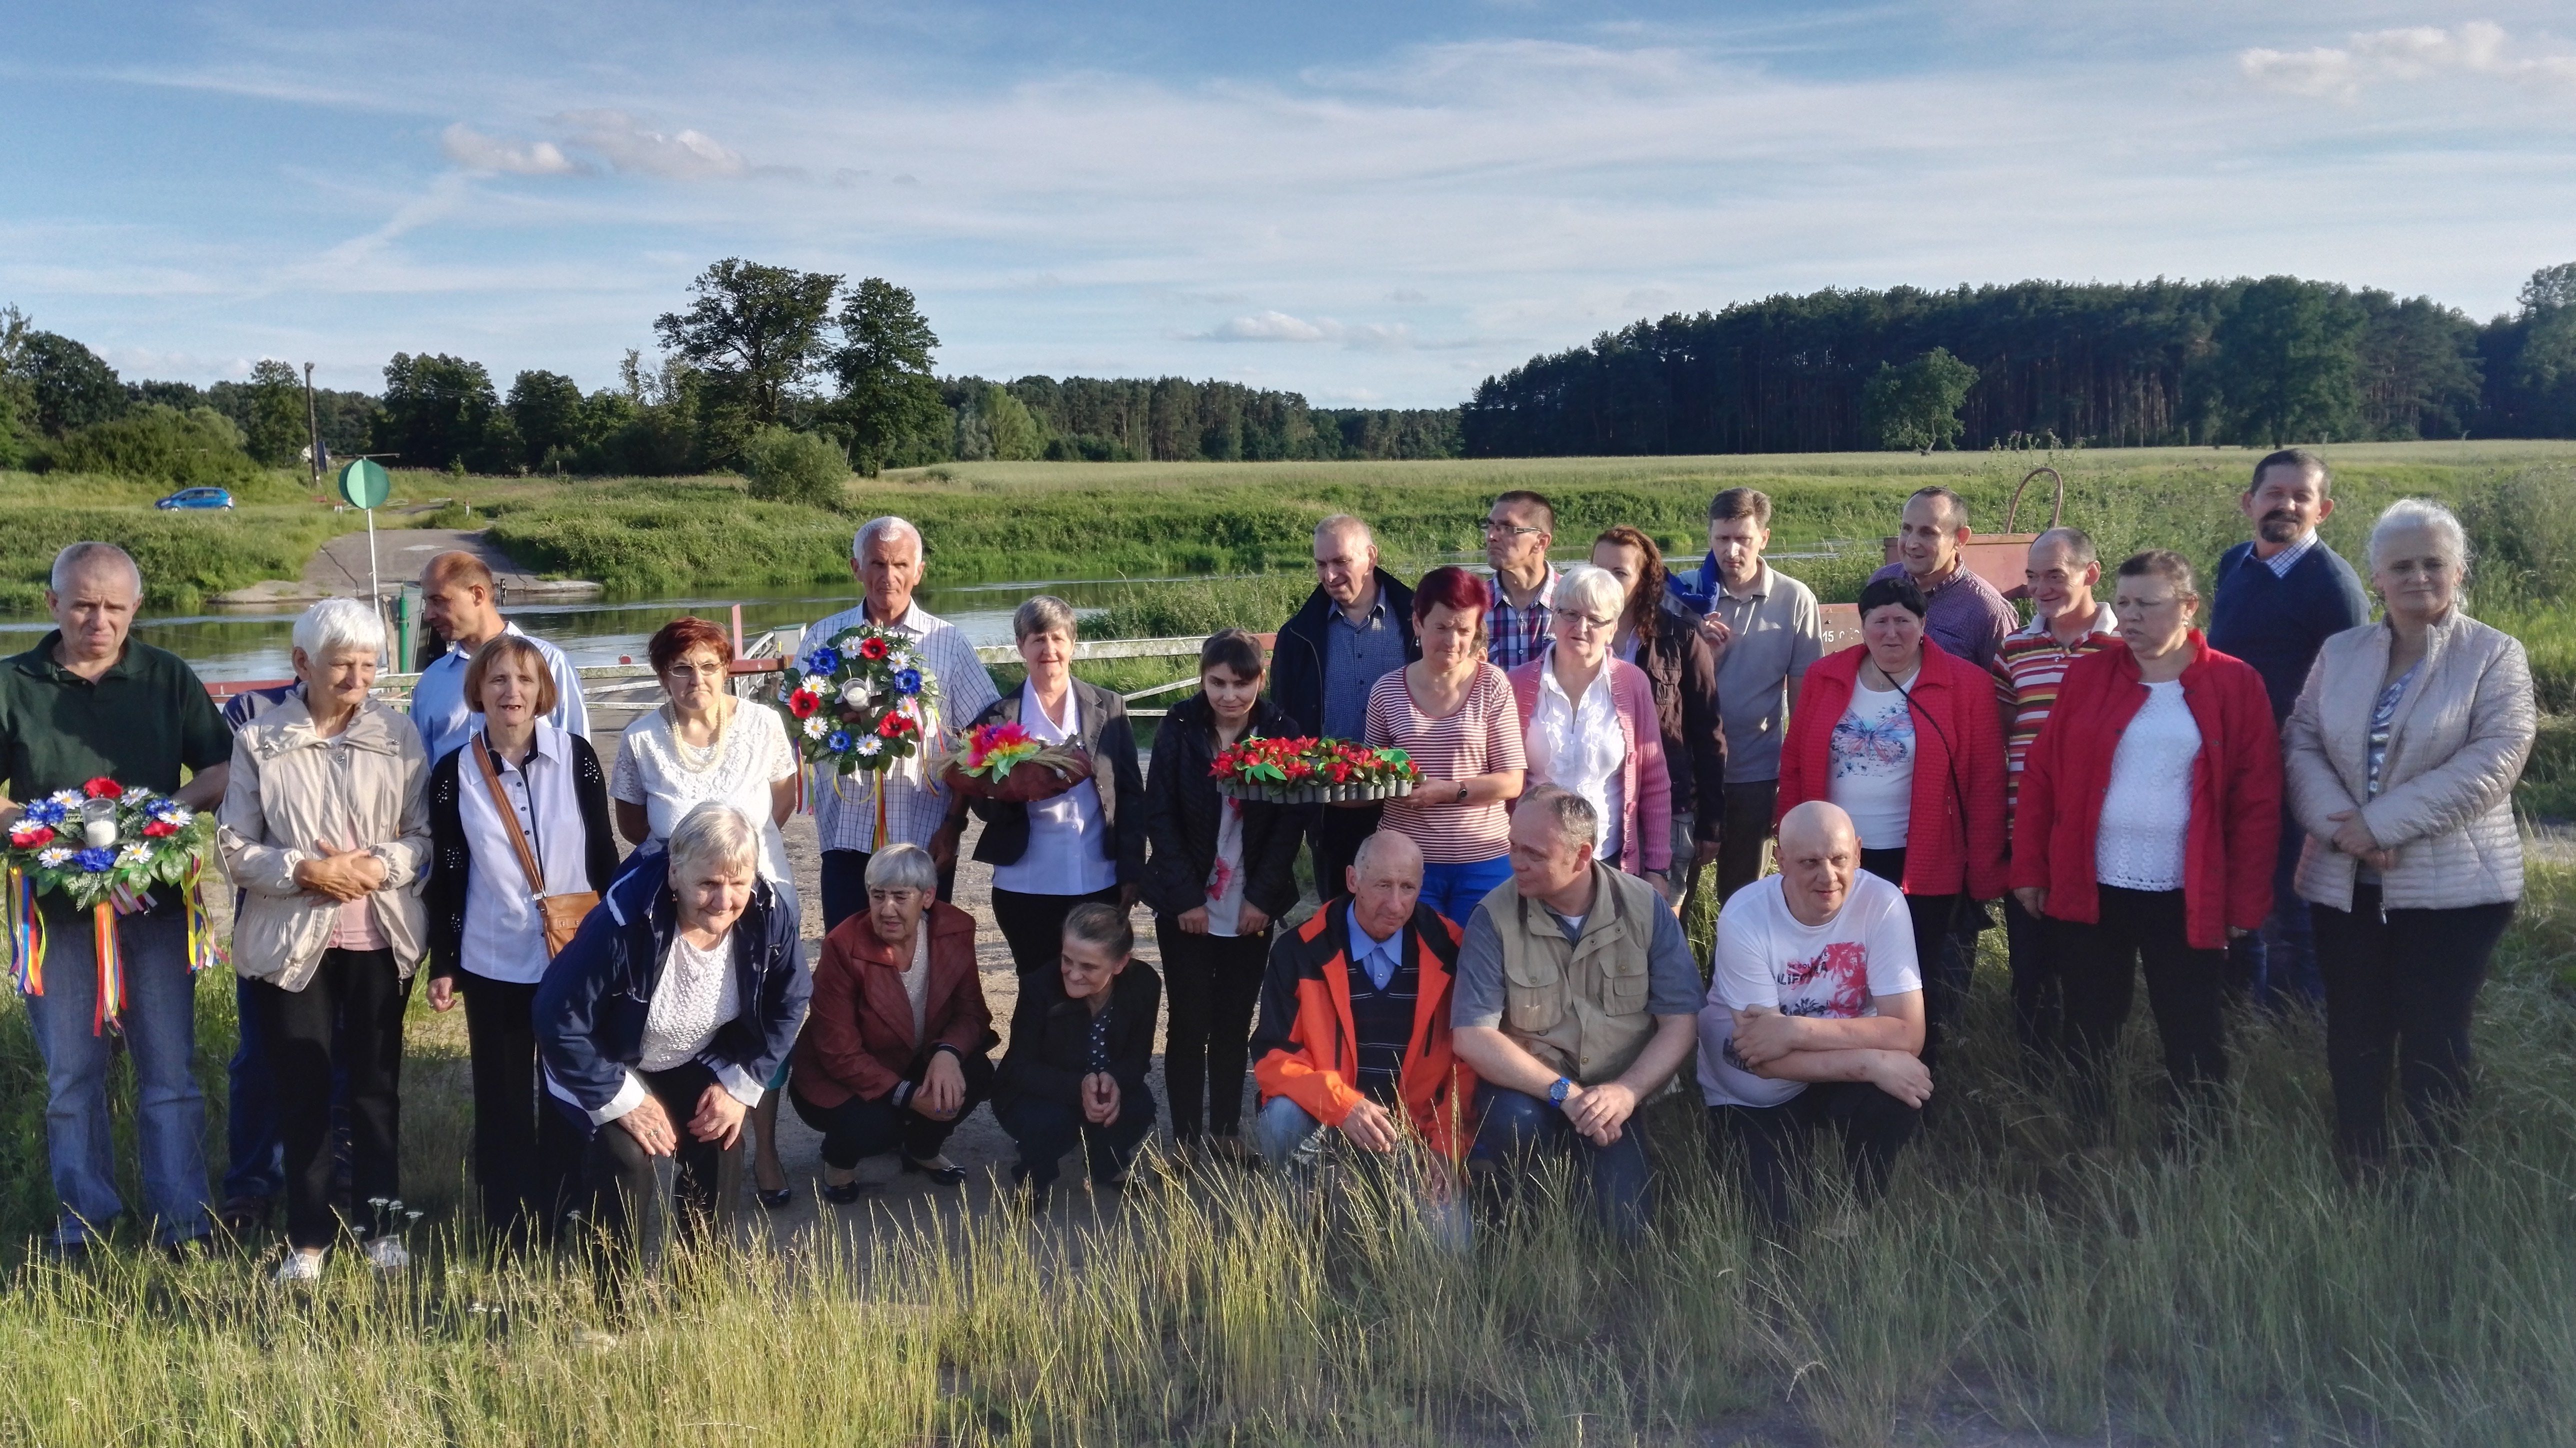 Mieszkańcy Domów Pomocy Społecznej z Chojna, Wielenia, Trzcianki, Nowej Wsi oraz Chrzypska pozują do zdjęcia trzymając wianki przed rzeką Wartą.